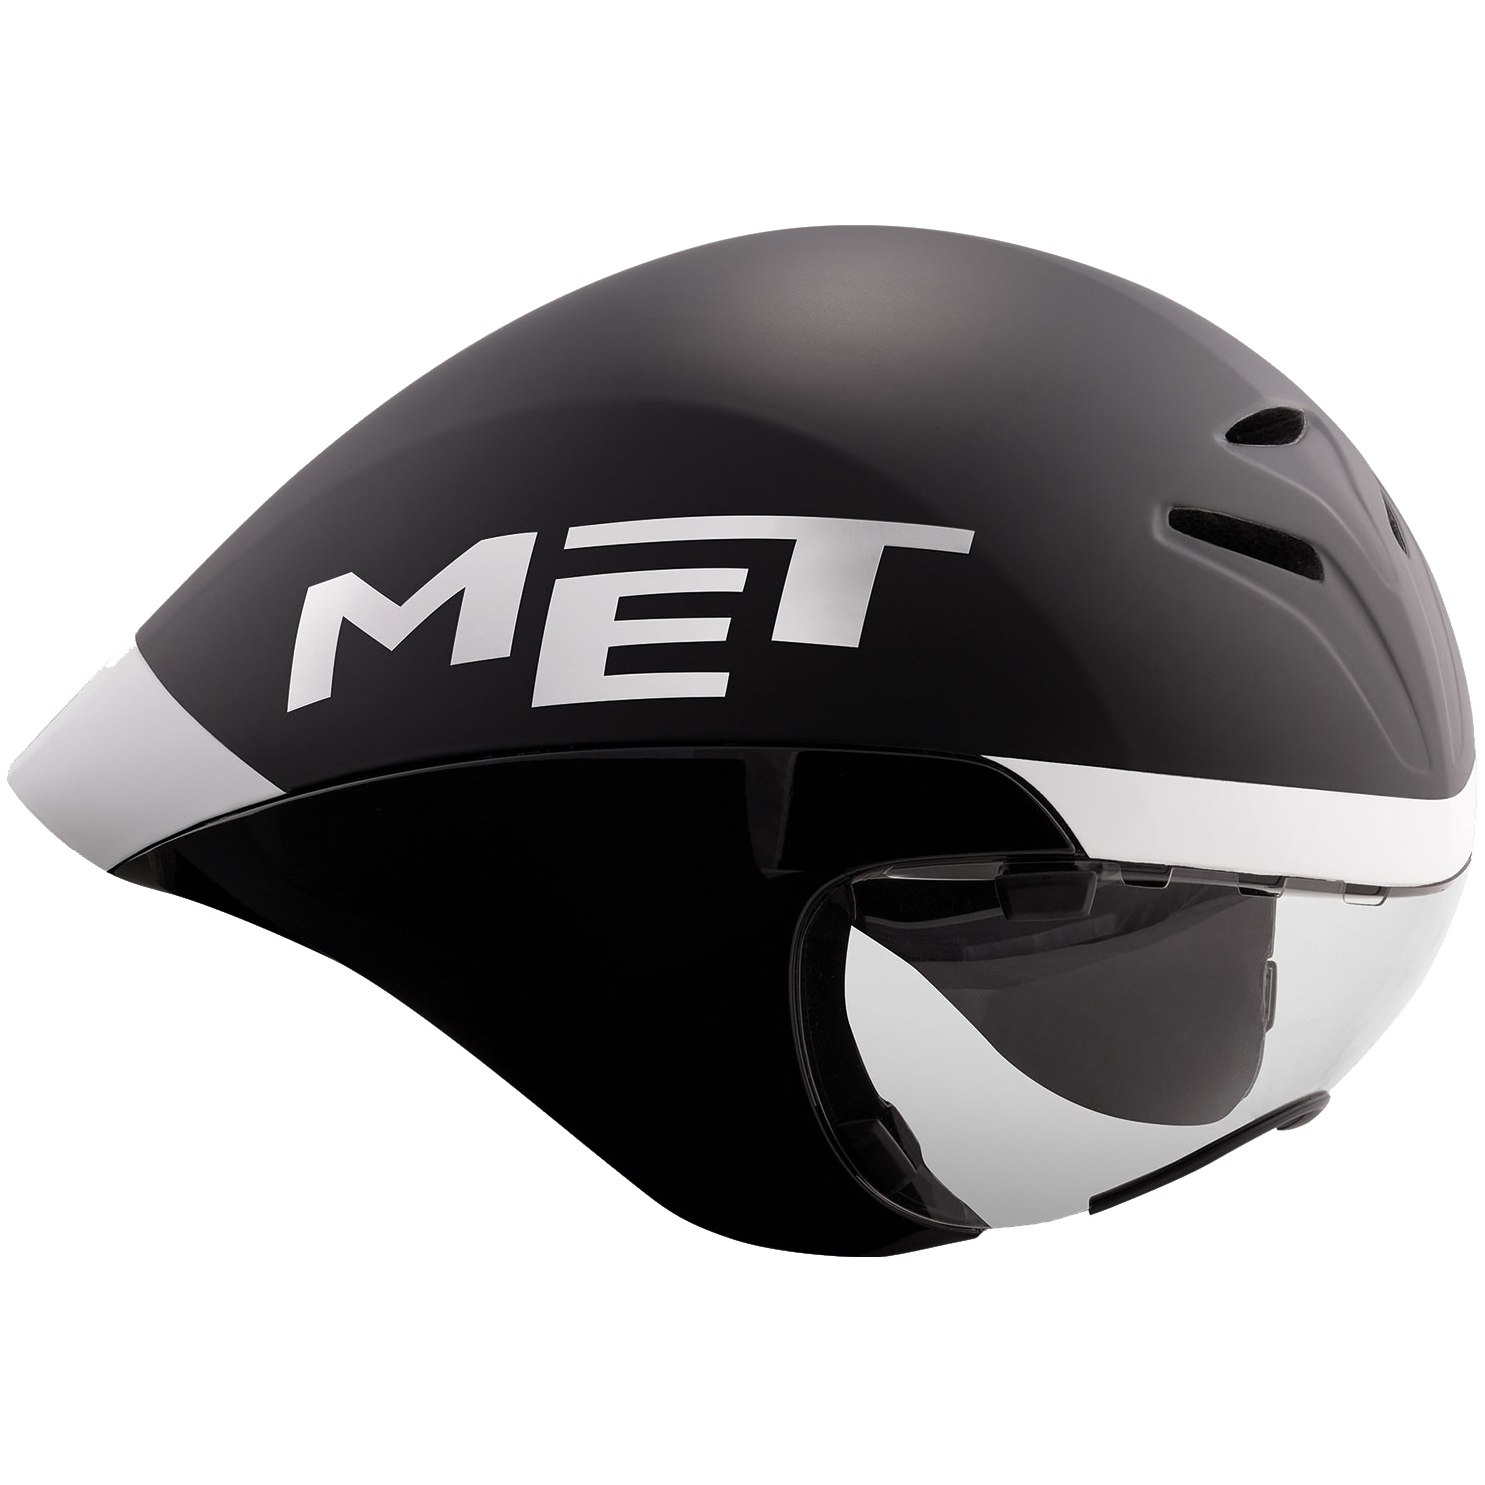 Bild von MET Drone Wide Body Helm - Schwarz / Weiß